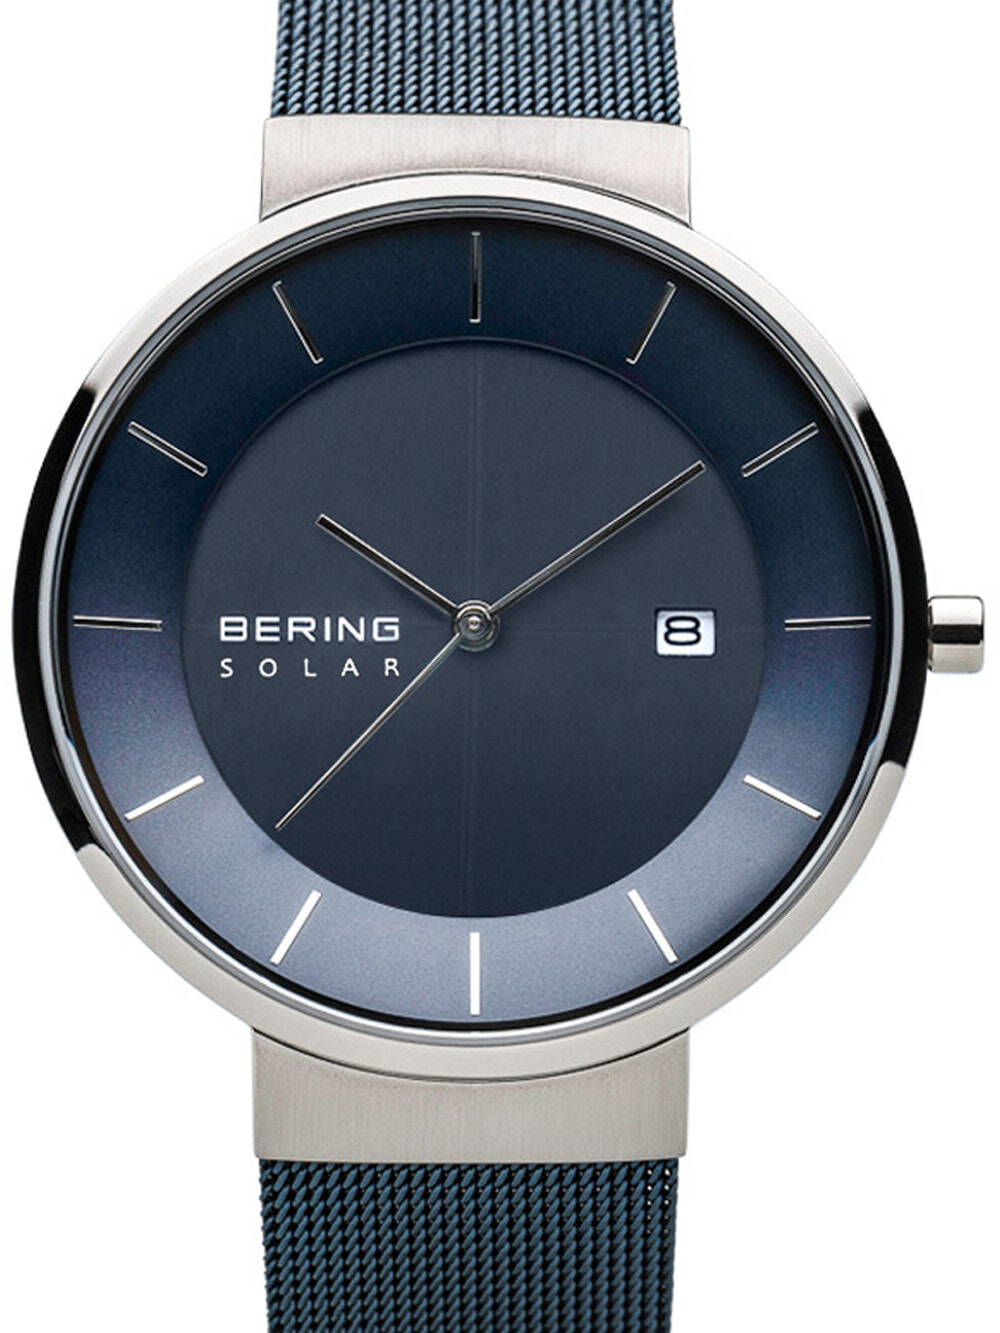 Мужские наручные часы с синим браслетом Bering 14639-307 solar mens 39mm 5ATM